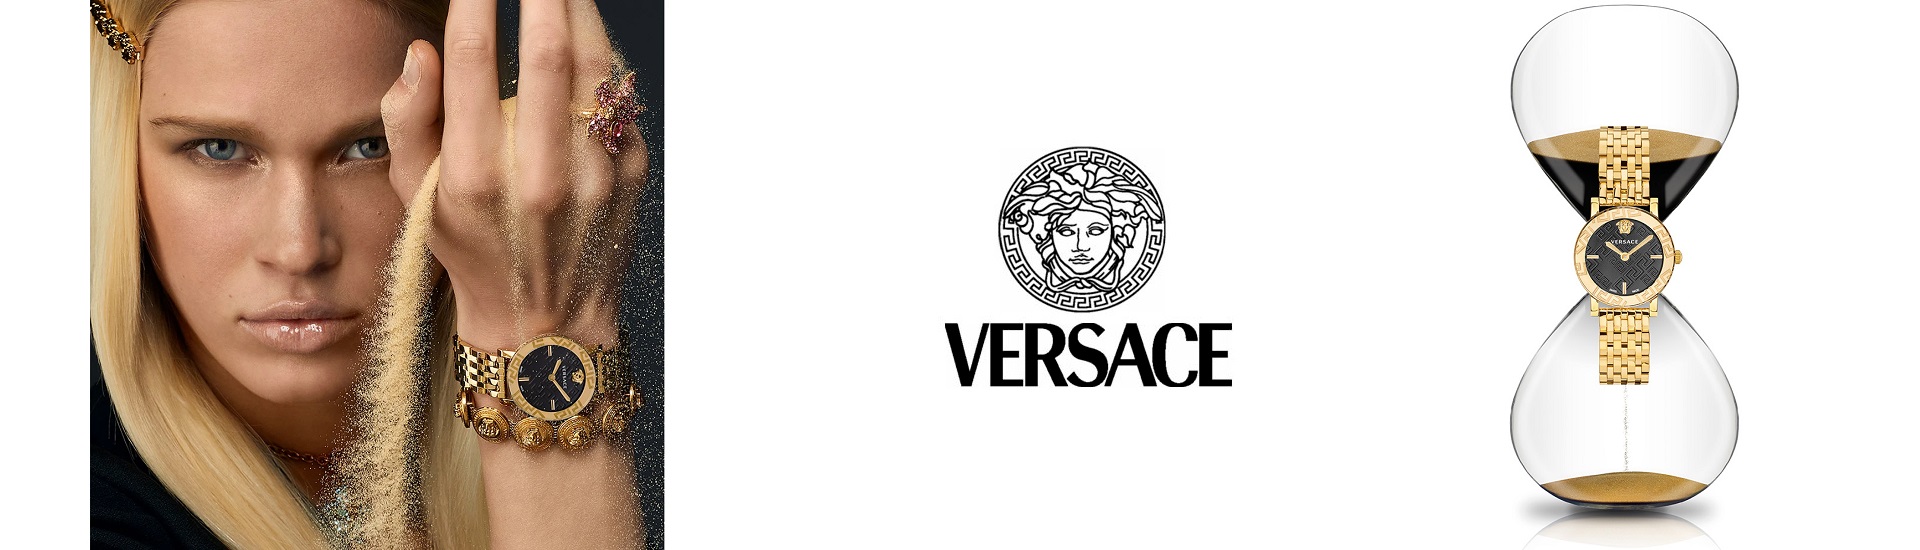 versace2